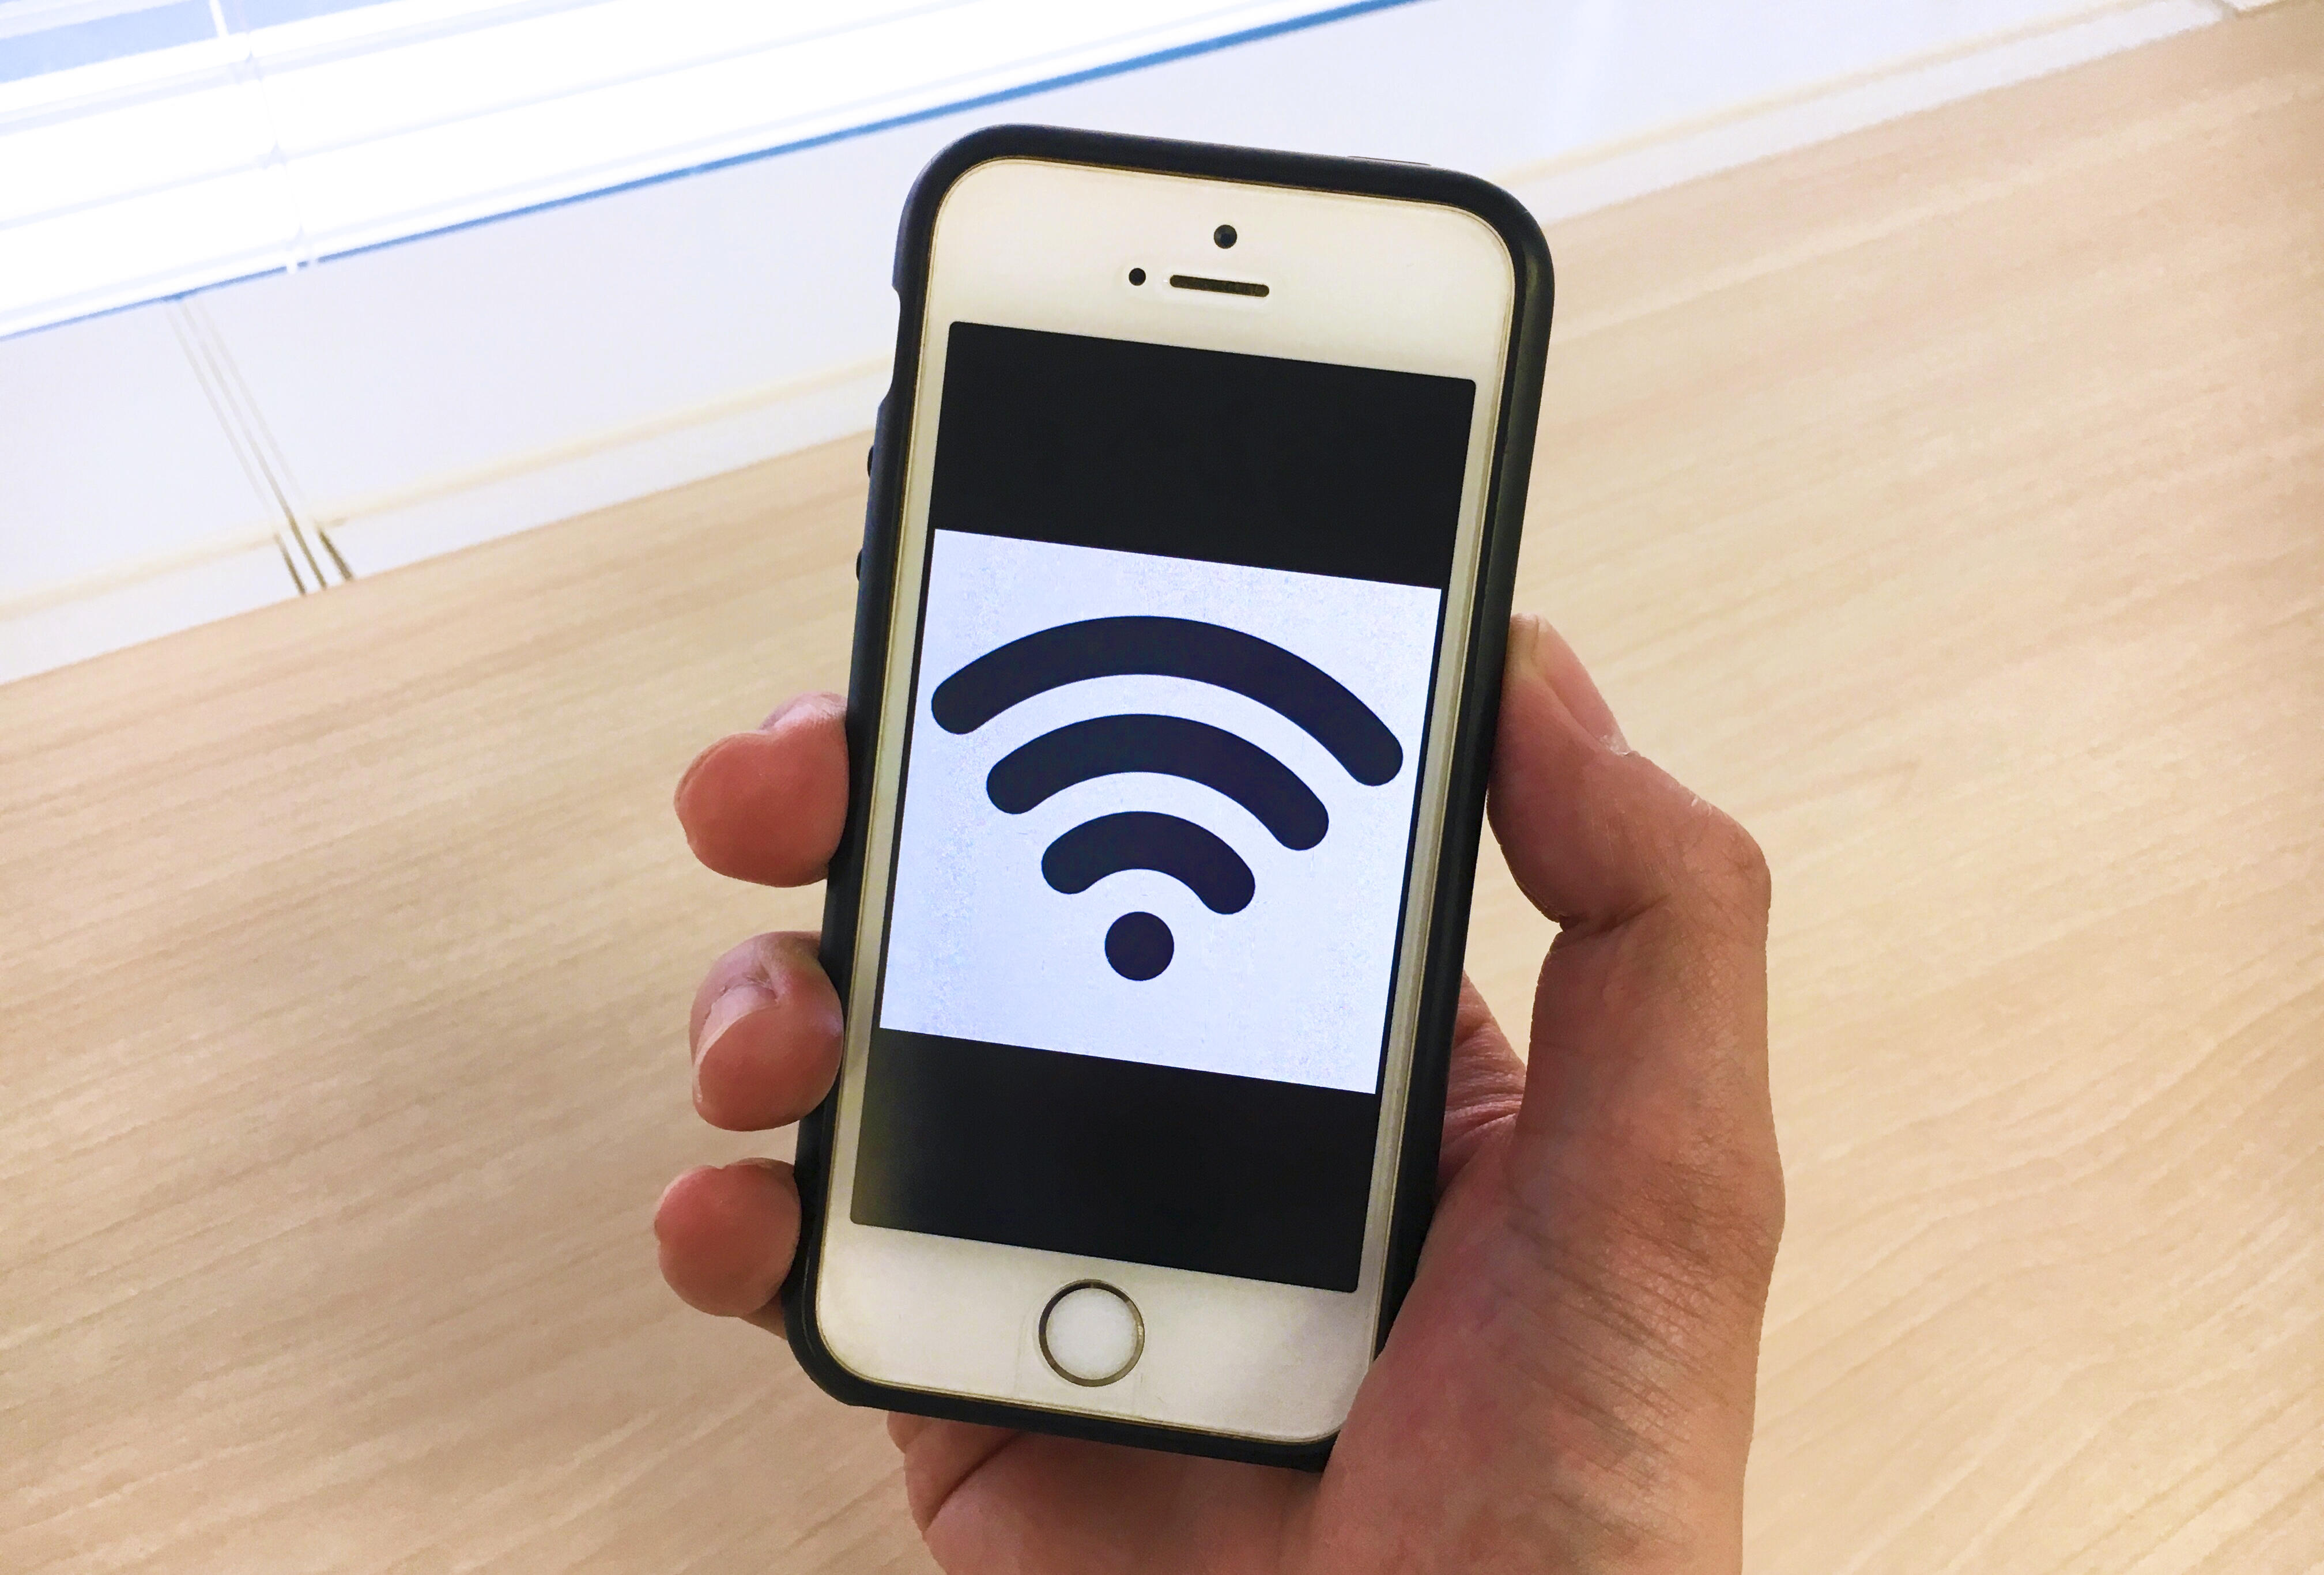 マイナビニュースに『Wi-Fi利用に関するアンケート調査』の記事を掲載しました。